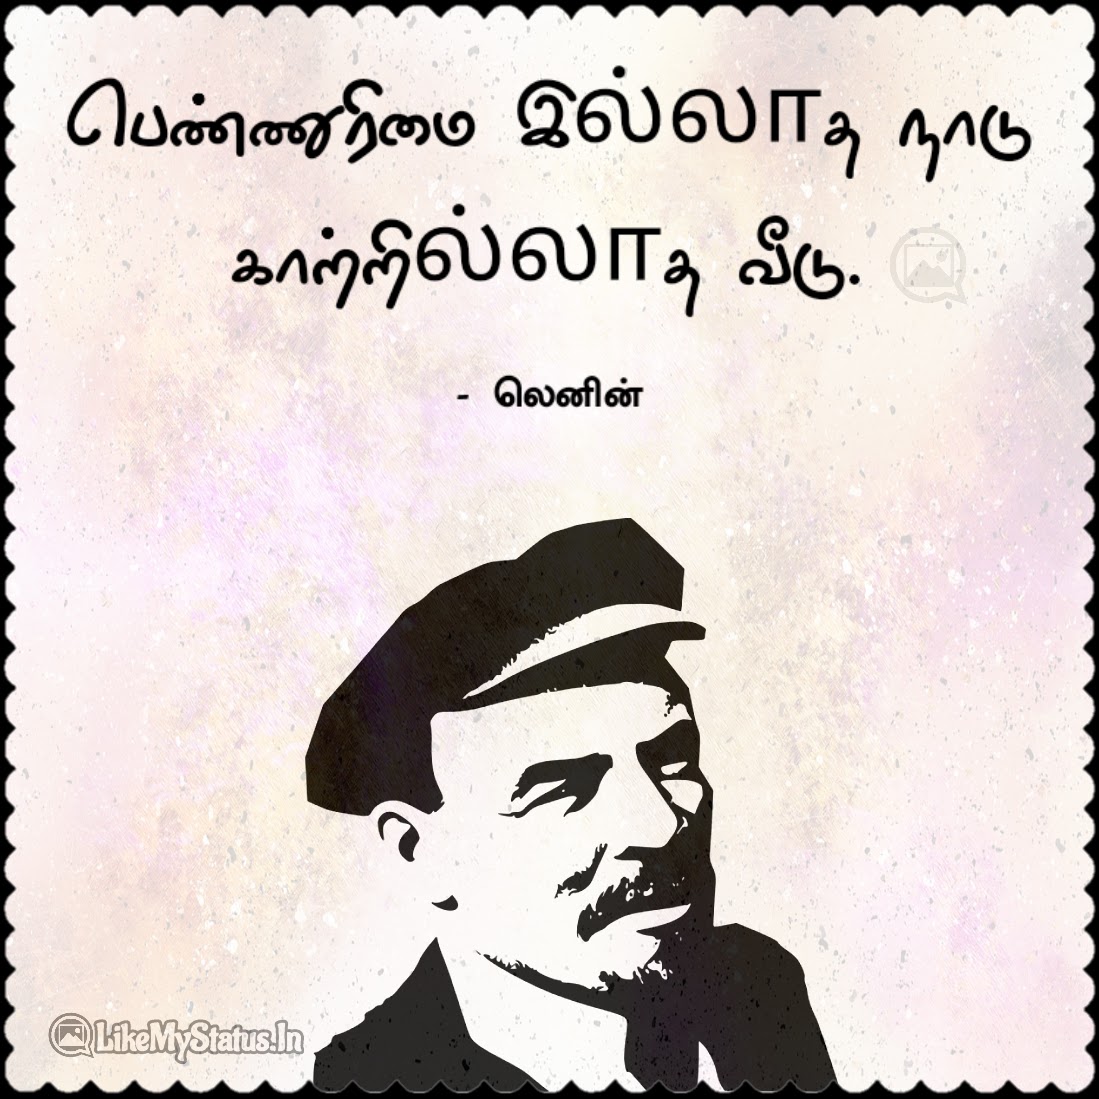 lenin quotes in tamil